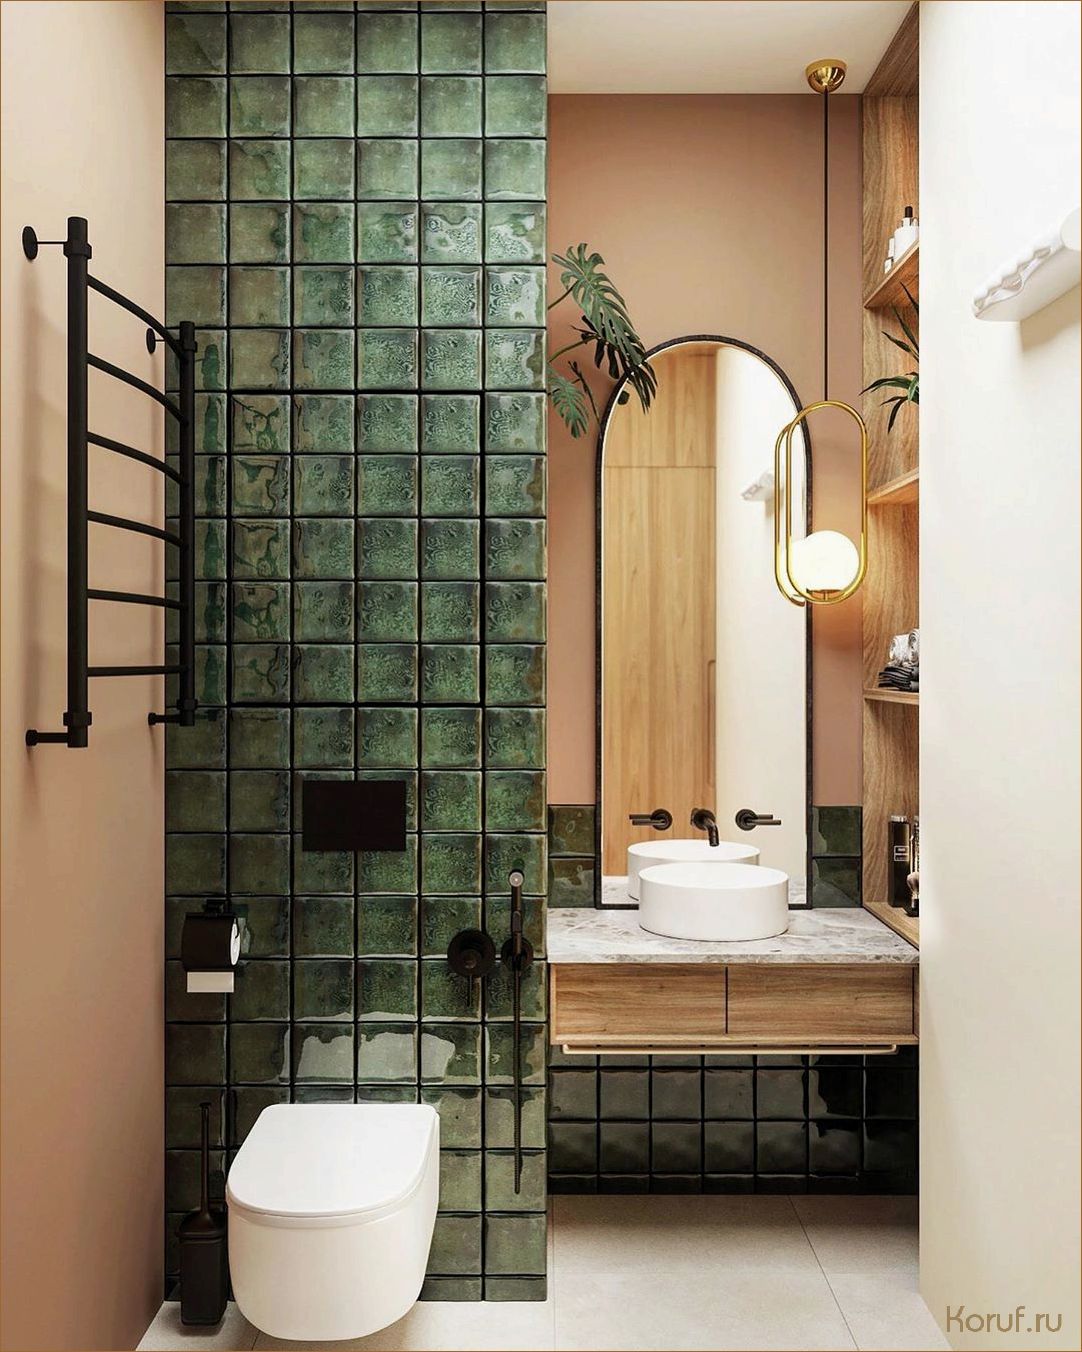 Новый дизайн для вашей ванны: уют и стиль в одном проекте